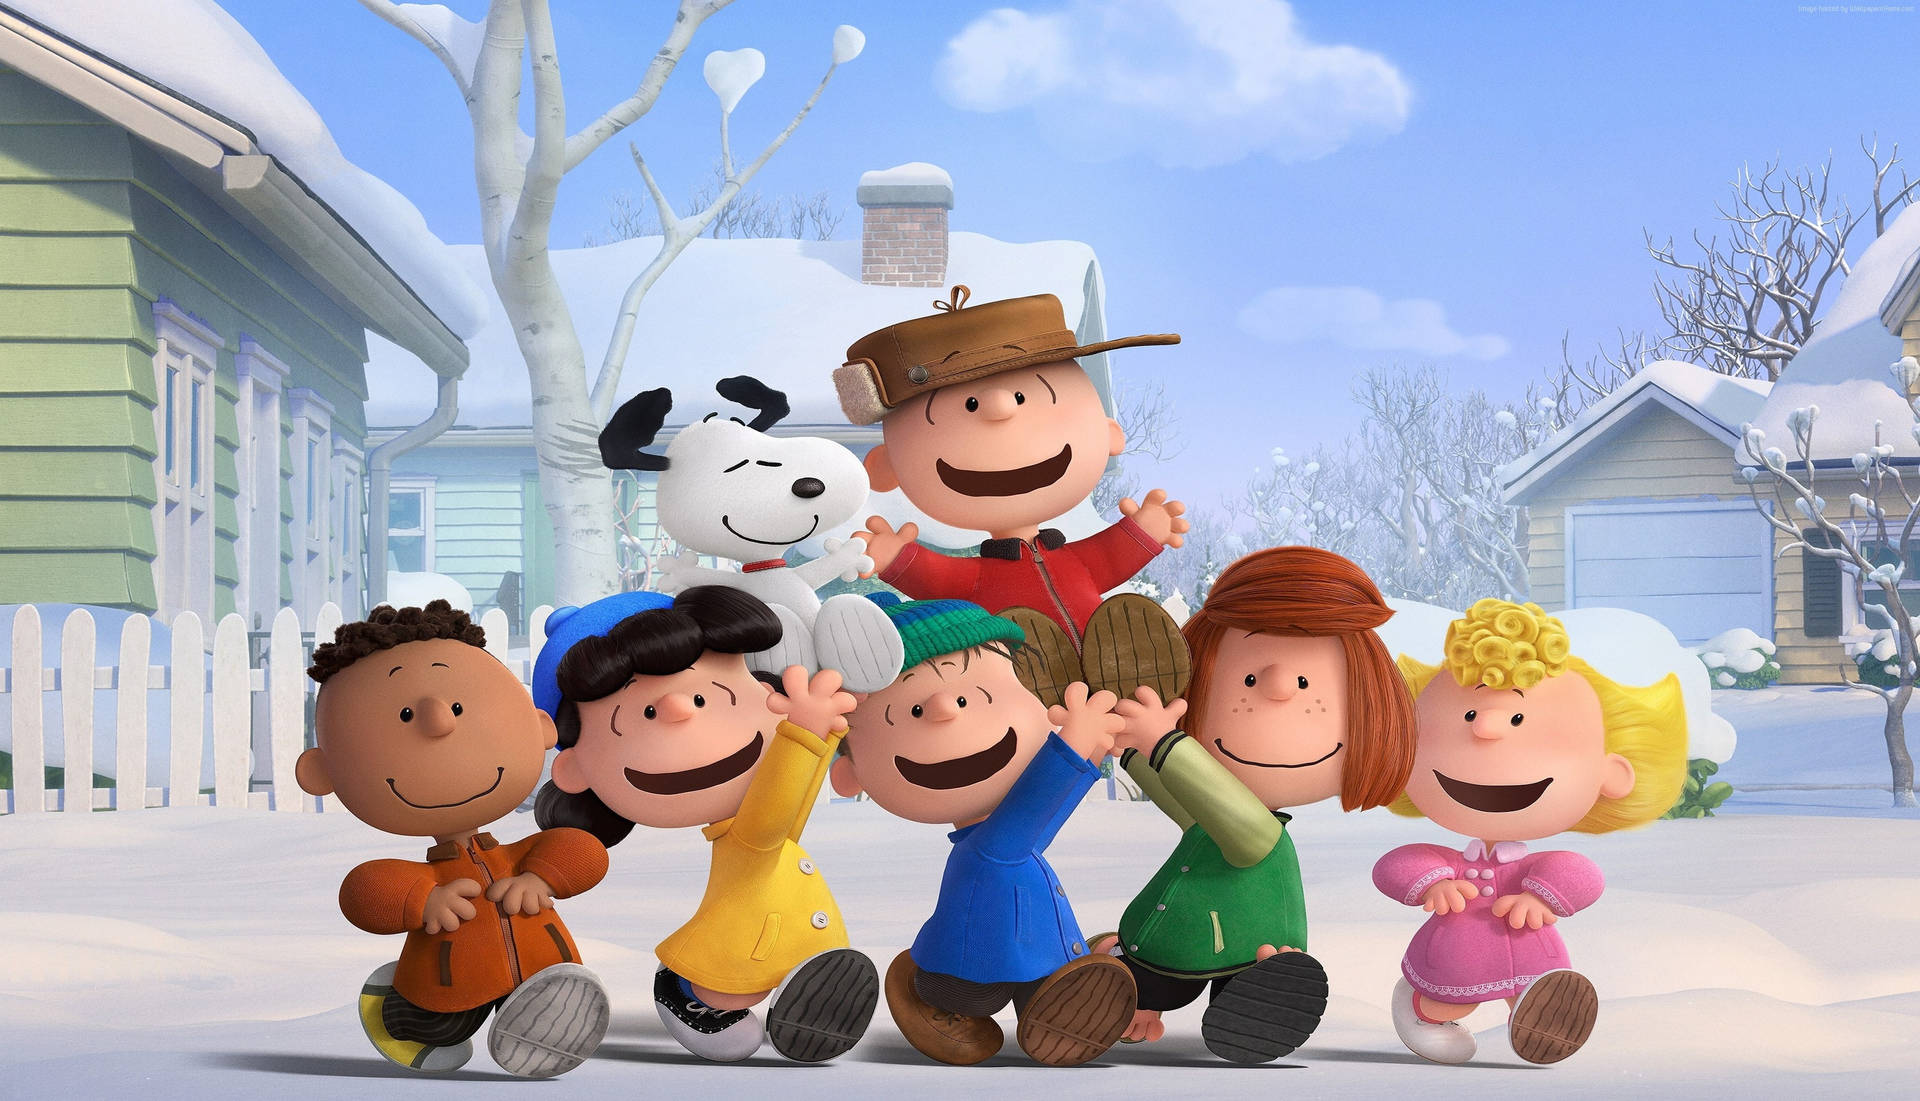 Personajesde Peanuts En Invierno Fondo de pantalla